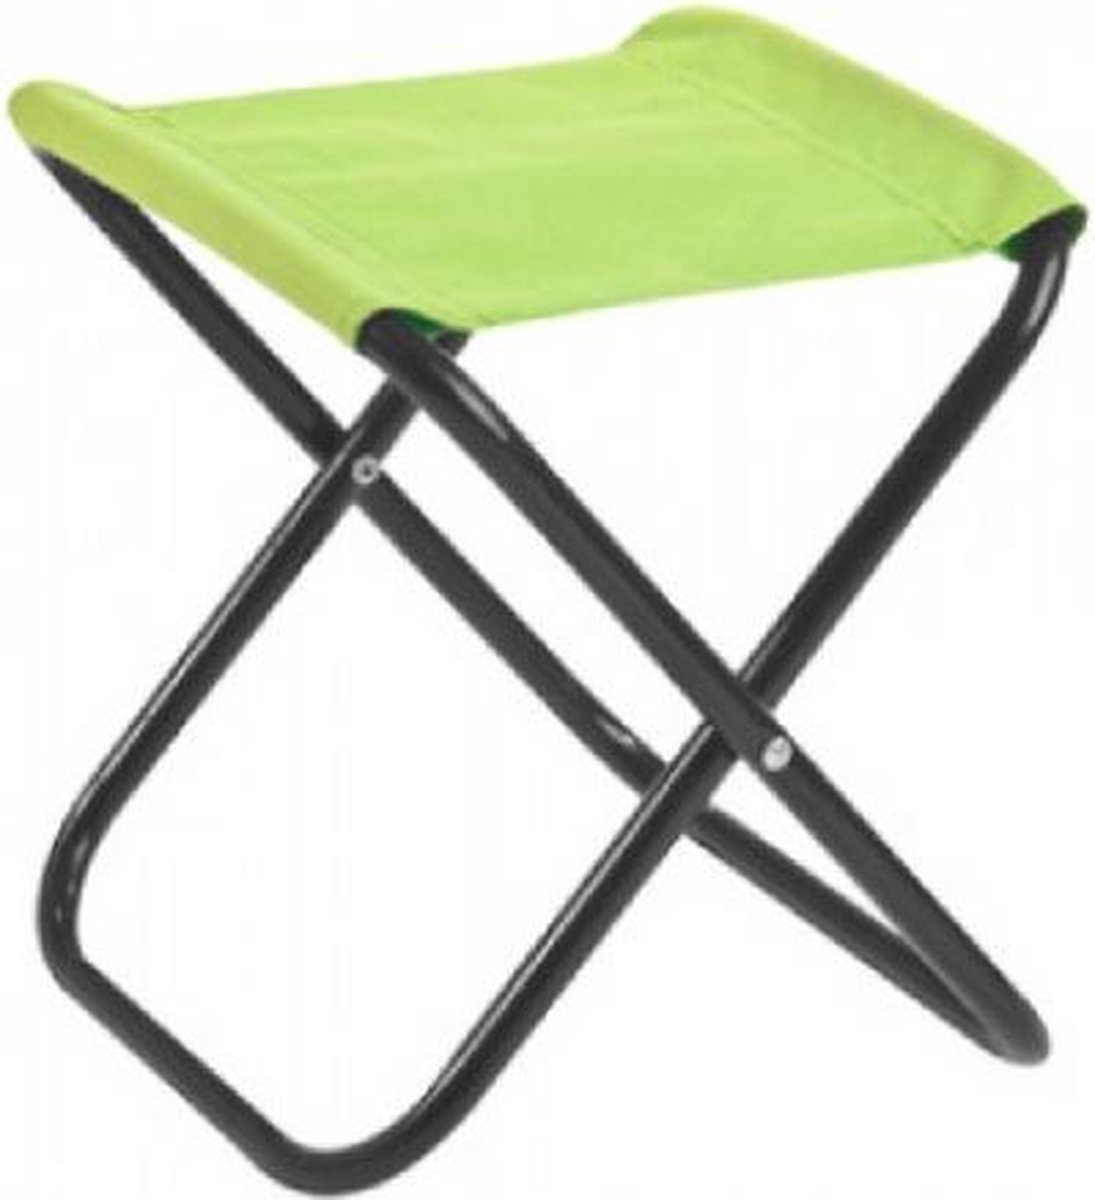 Mini kruk | Groen | Campingstoel klein | | stoel | Visserij kruk |... | bol.com